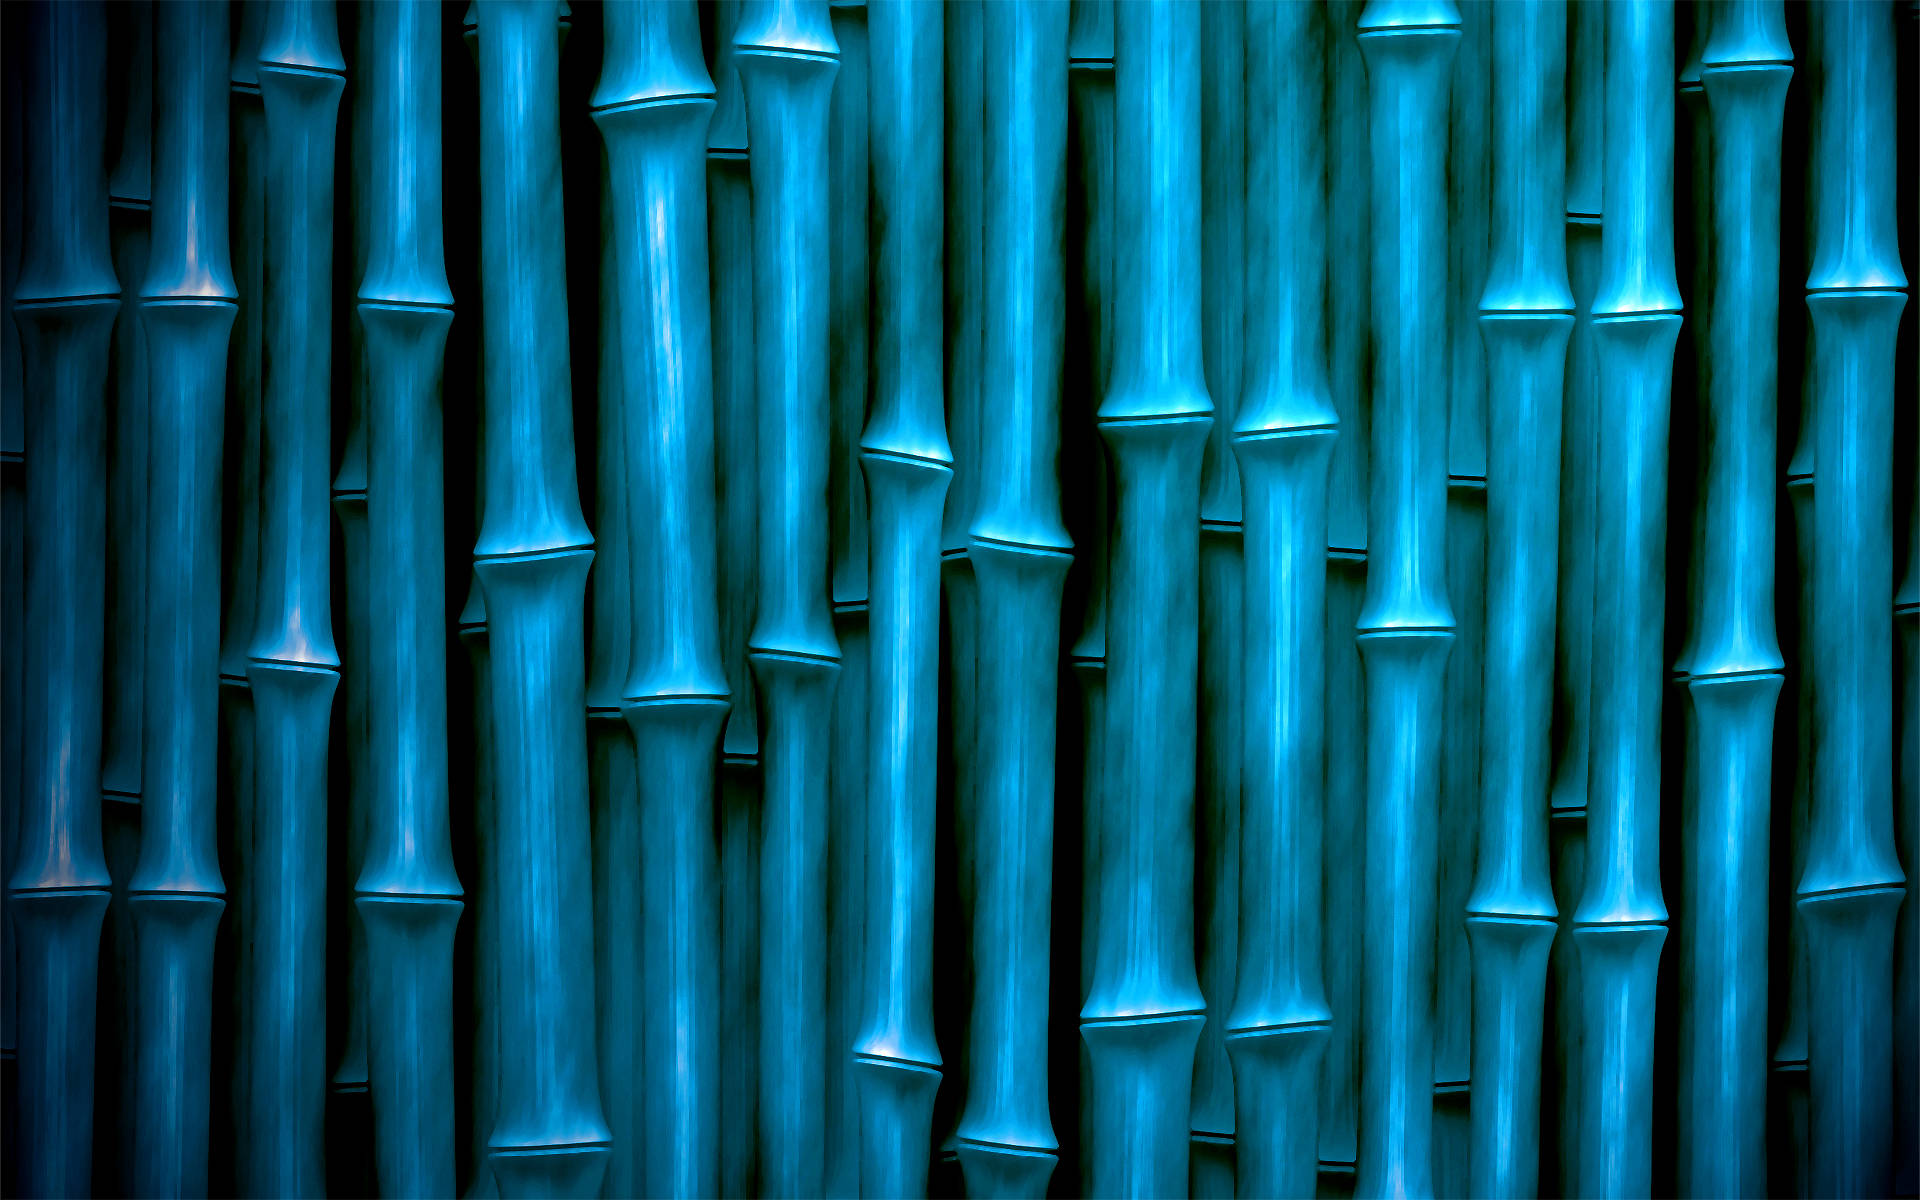 Papelde Parede De Bambu Com Tonalidade Azul Em Alta Definição. Papel de Parede